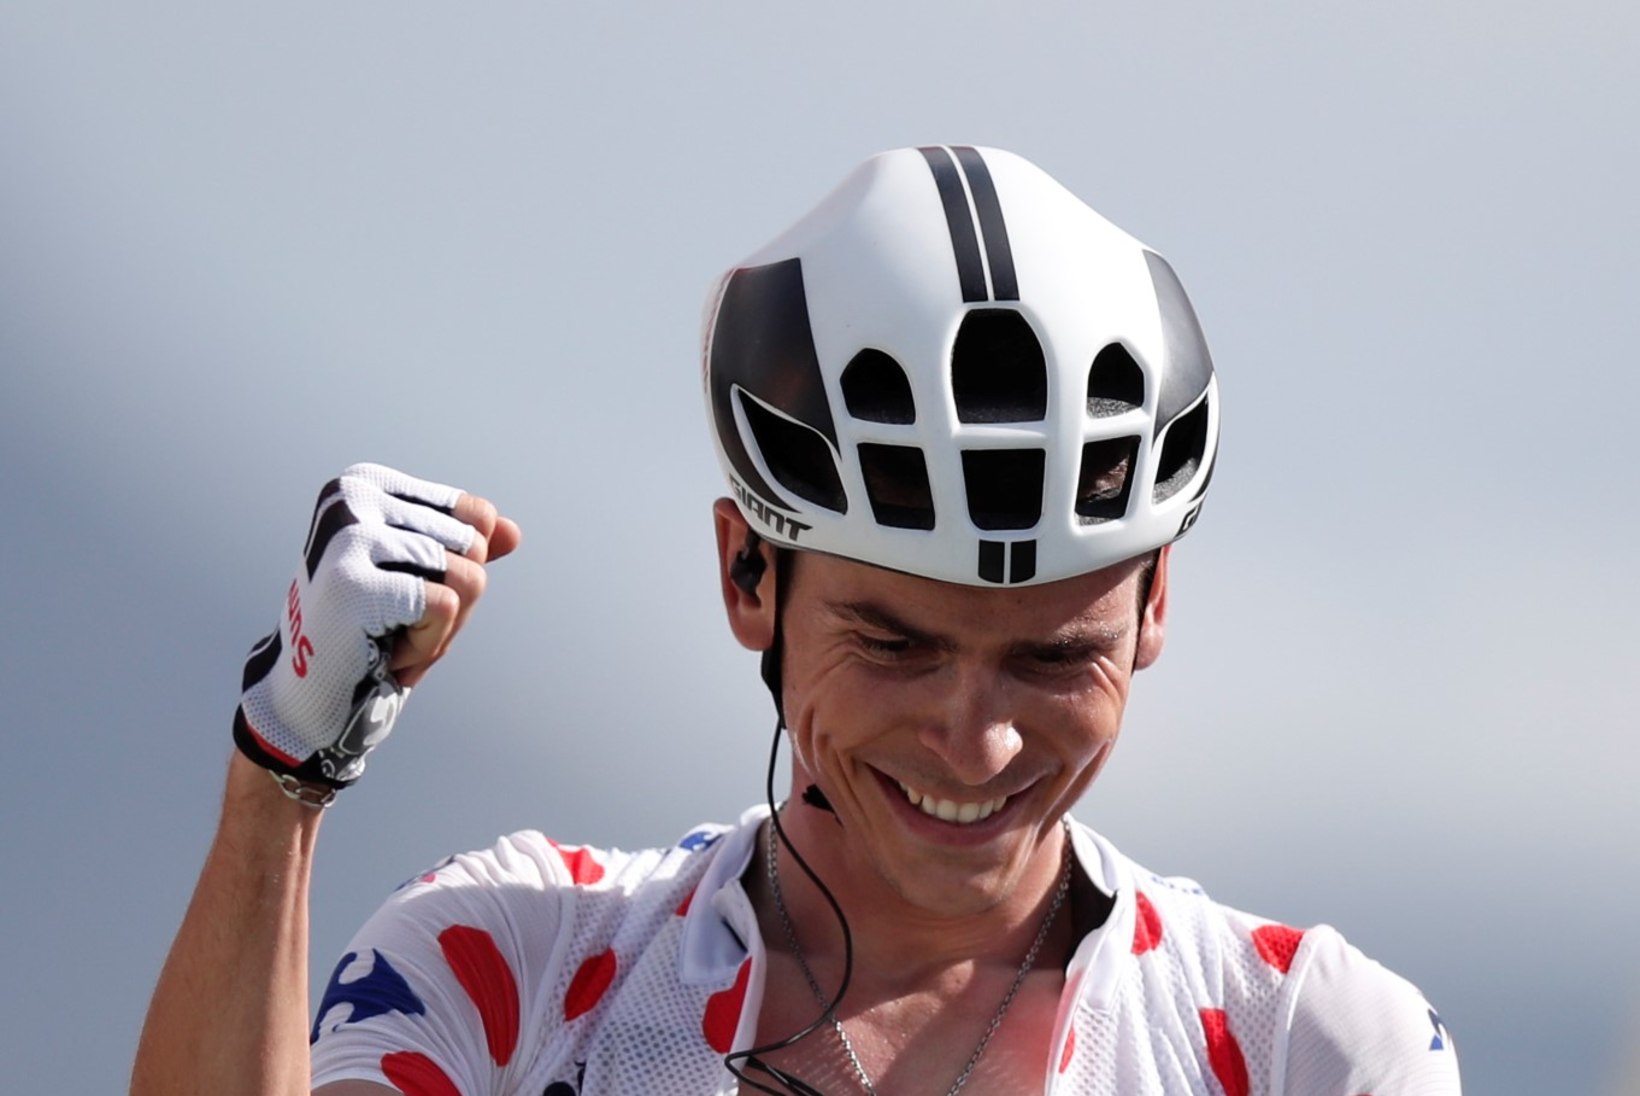 Tänase Tour de France'i etapi võitis Barguil, Froome kindlustas raske etapiga enda liidripositsiooni